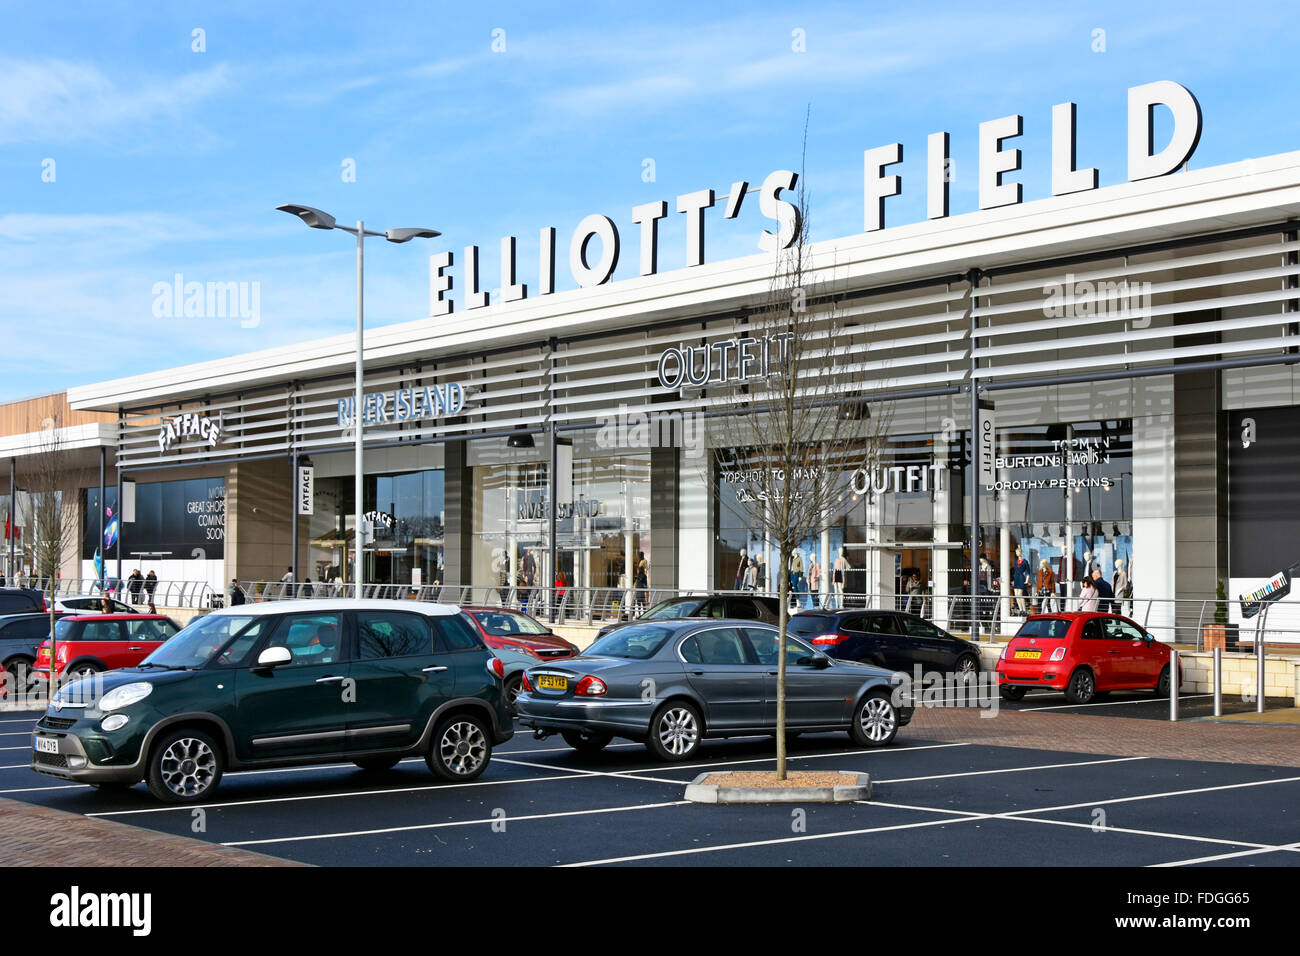 Winter-Shopper im Elliotts Field modernes Einkaufszentrum Einkaufszentrum Gewerbepark kostenlose Parkplätze in Rugby Warwickshire England Großbritannien Stockfoto